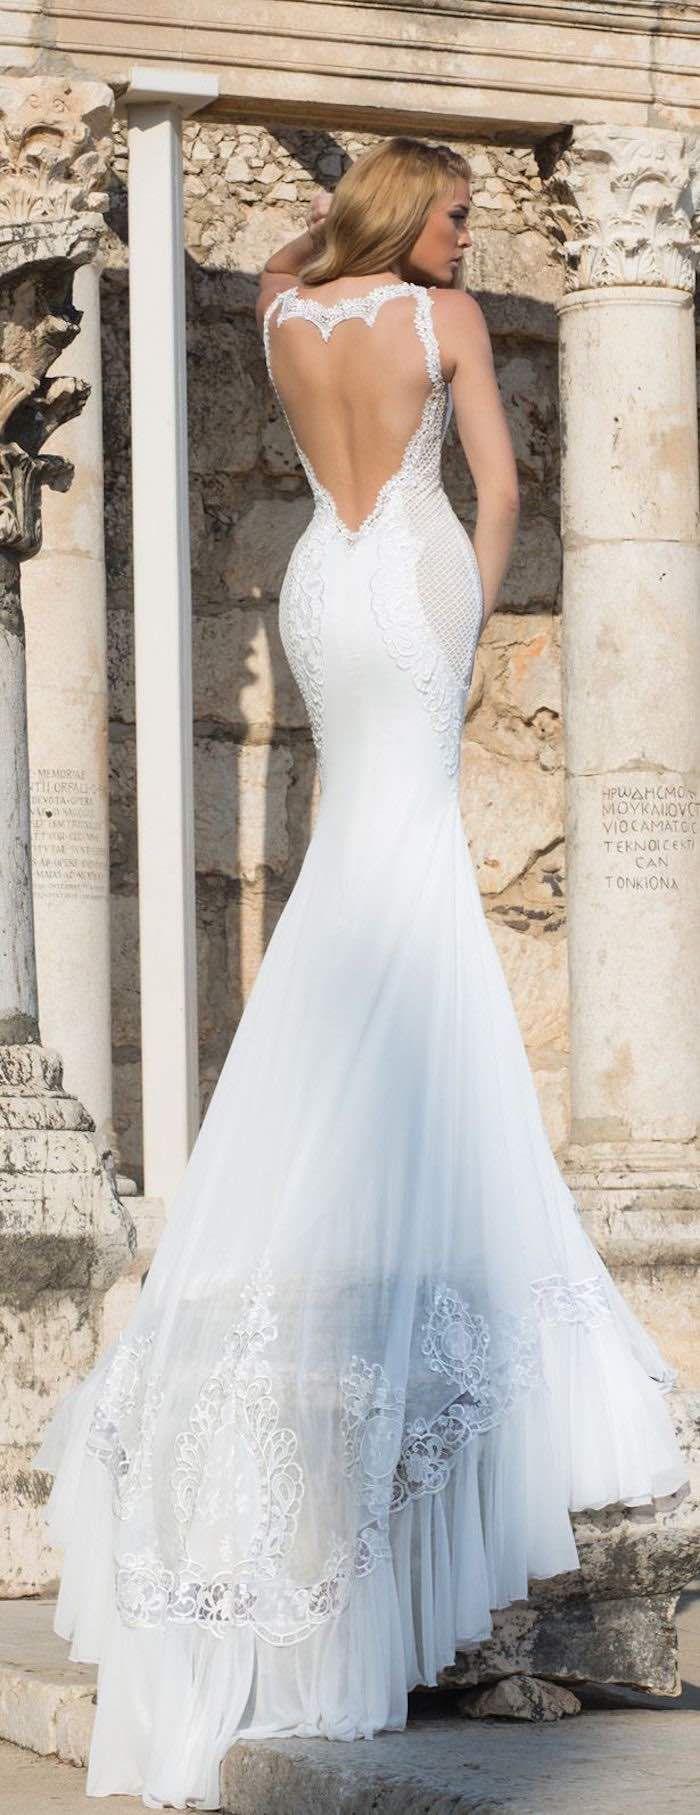 Hochzeit - Sexy Wedding Dresses With Hottest Details